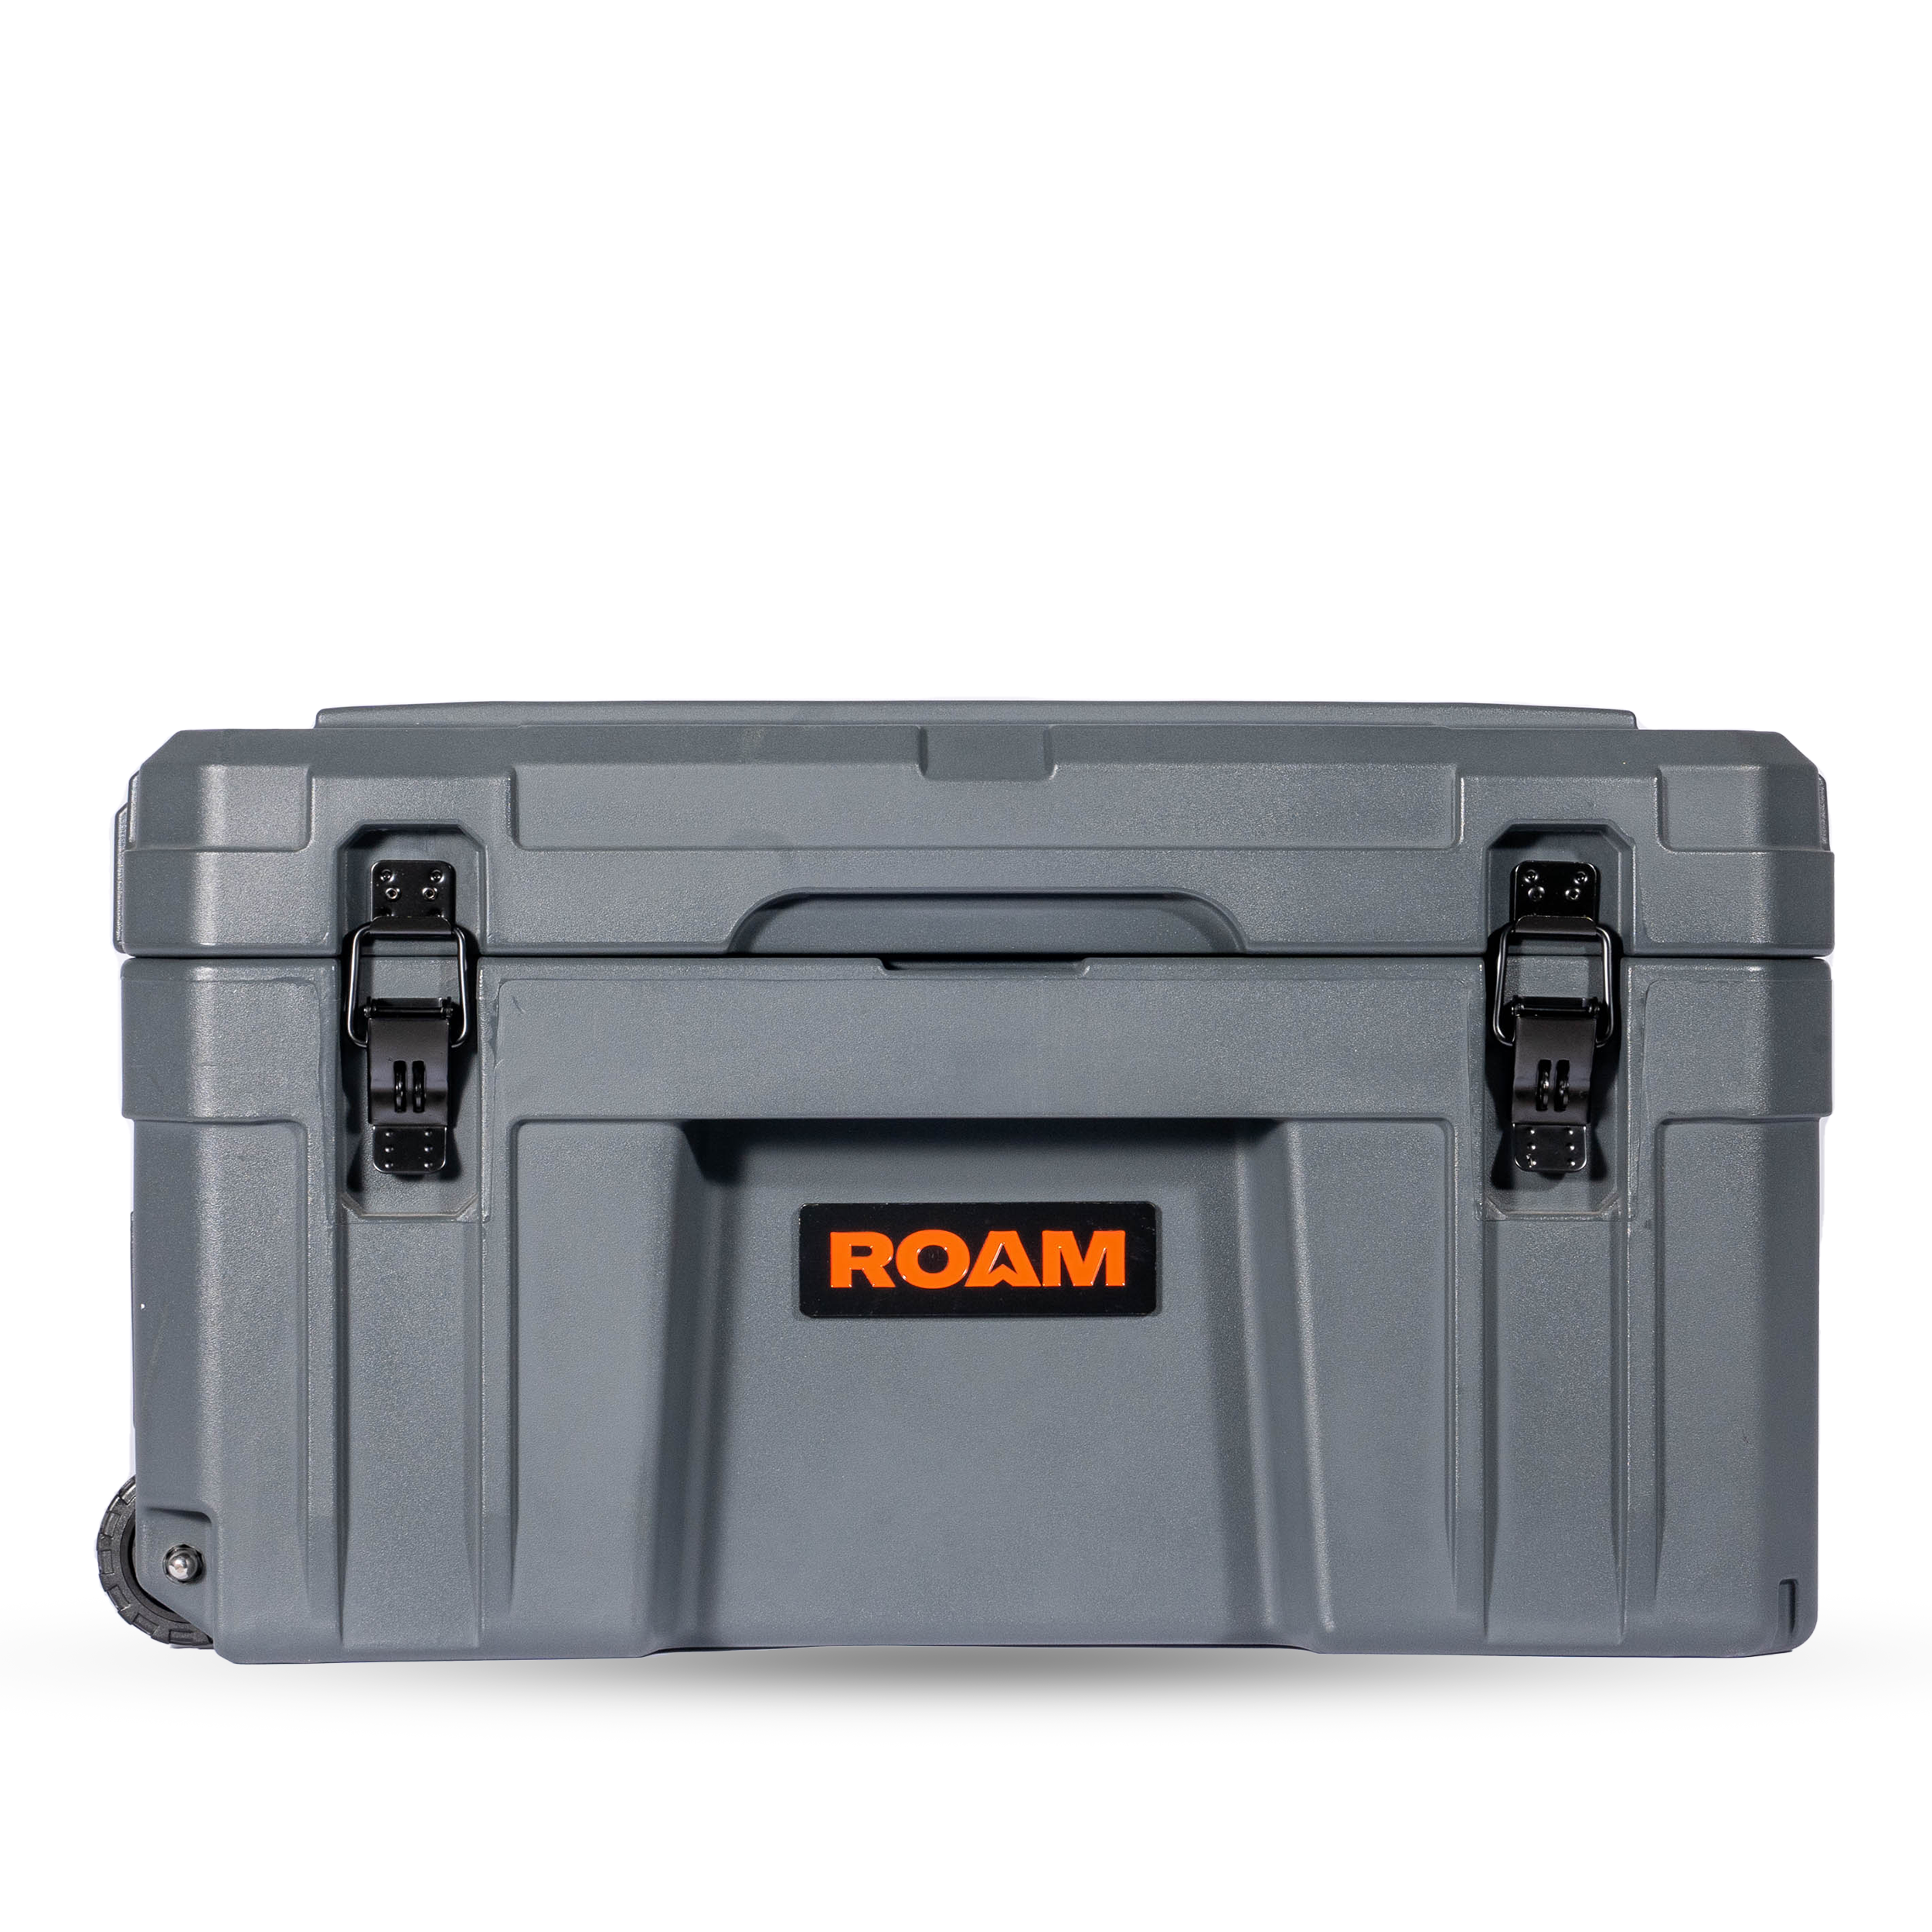 ROAM 80L Rolling Rugged Case